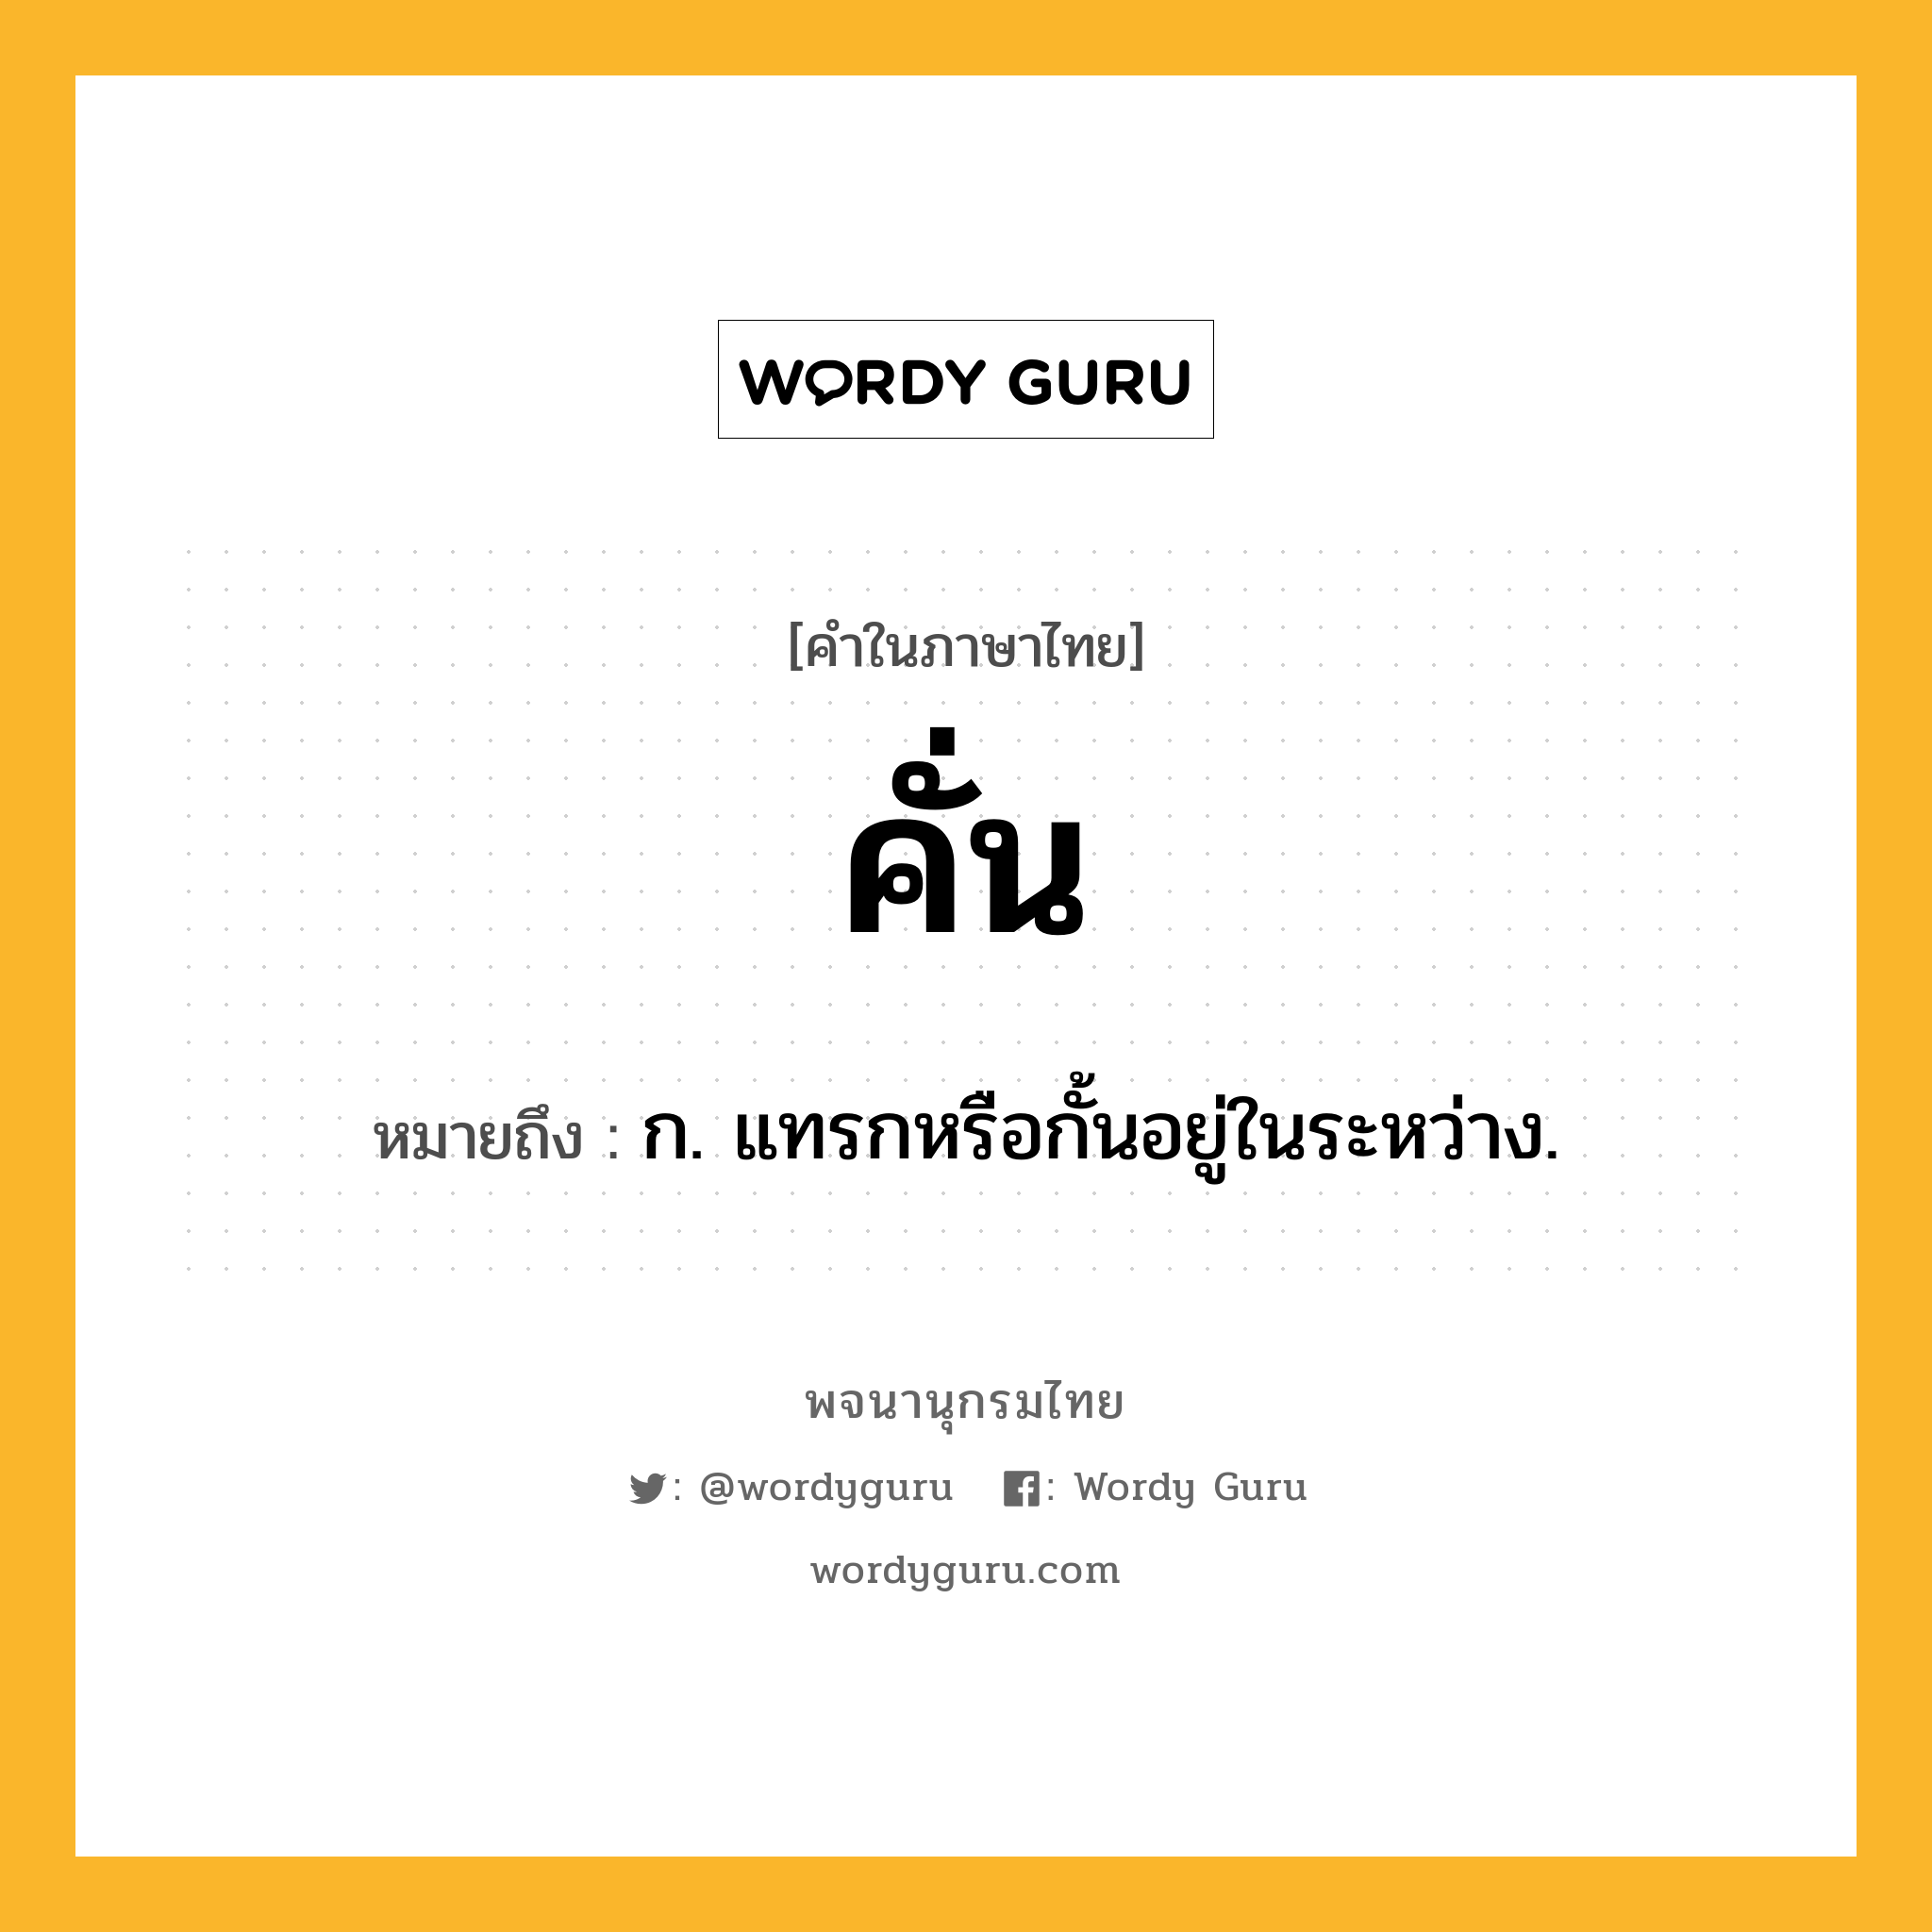 คั่น ความหมาย หมายถึงอะไร?, คำในภาษาไทย คั่น หมายถึง ก. แทรกหรือกั้นอยู่ในระหว่าง.